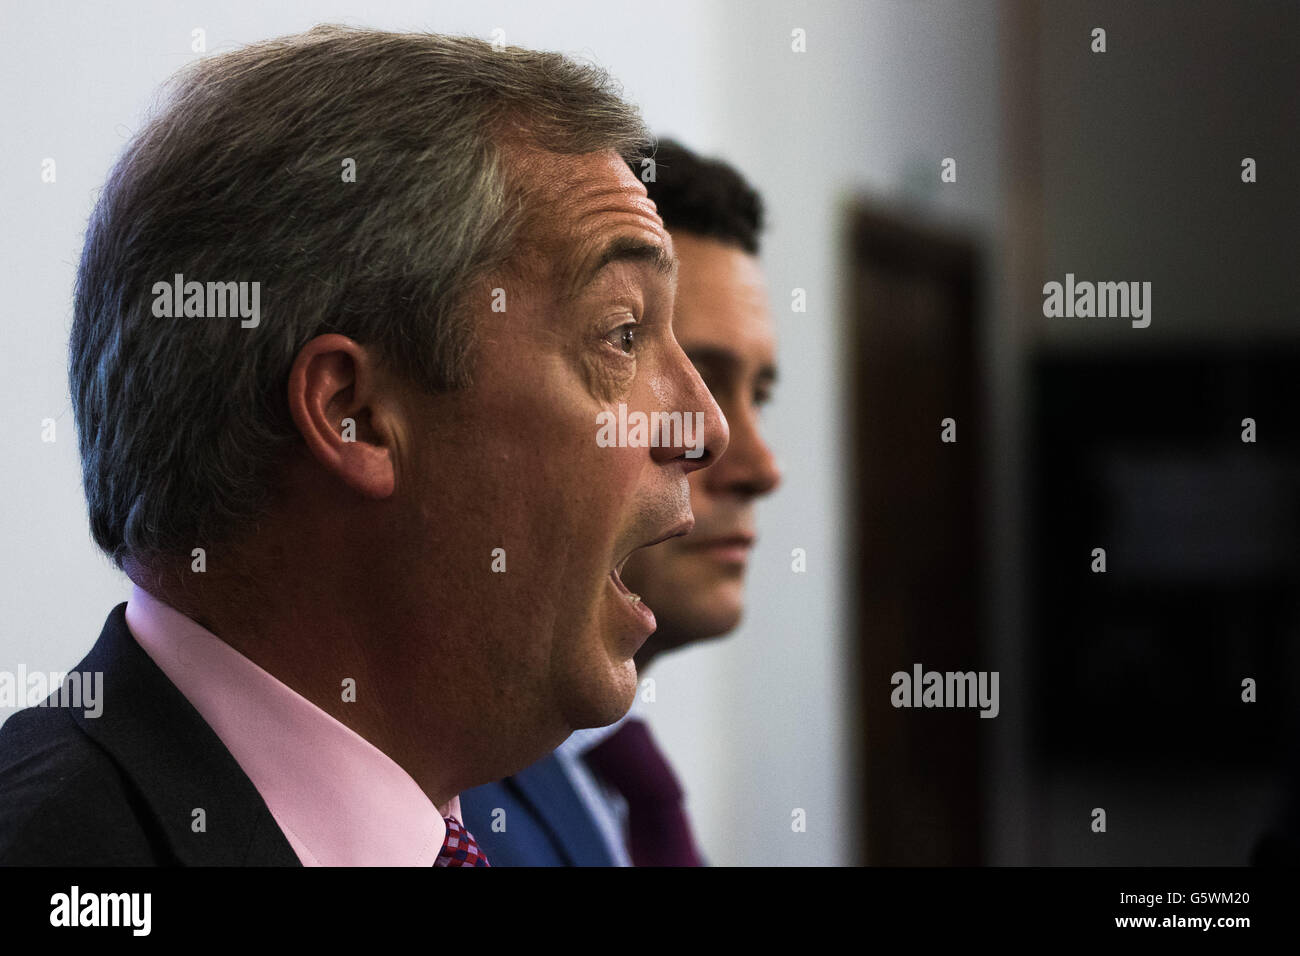 Emmanuel Centre, Westminster, London, 22. Juni 2016. Die UKIP Führer und lautstarken Anti-EU-Kämpferin Nigel Farage liefert seine fi Stockfoto